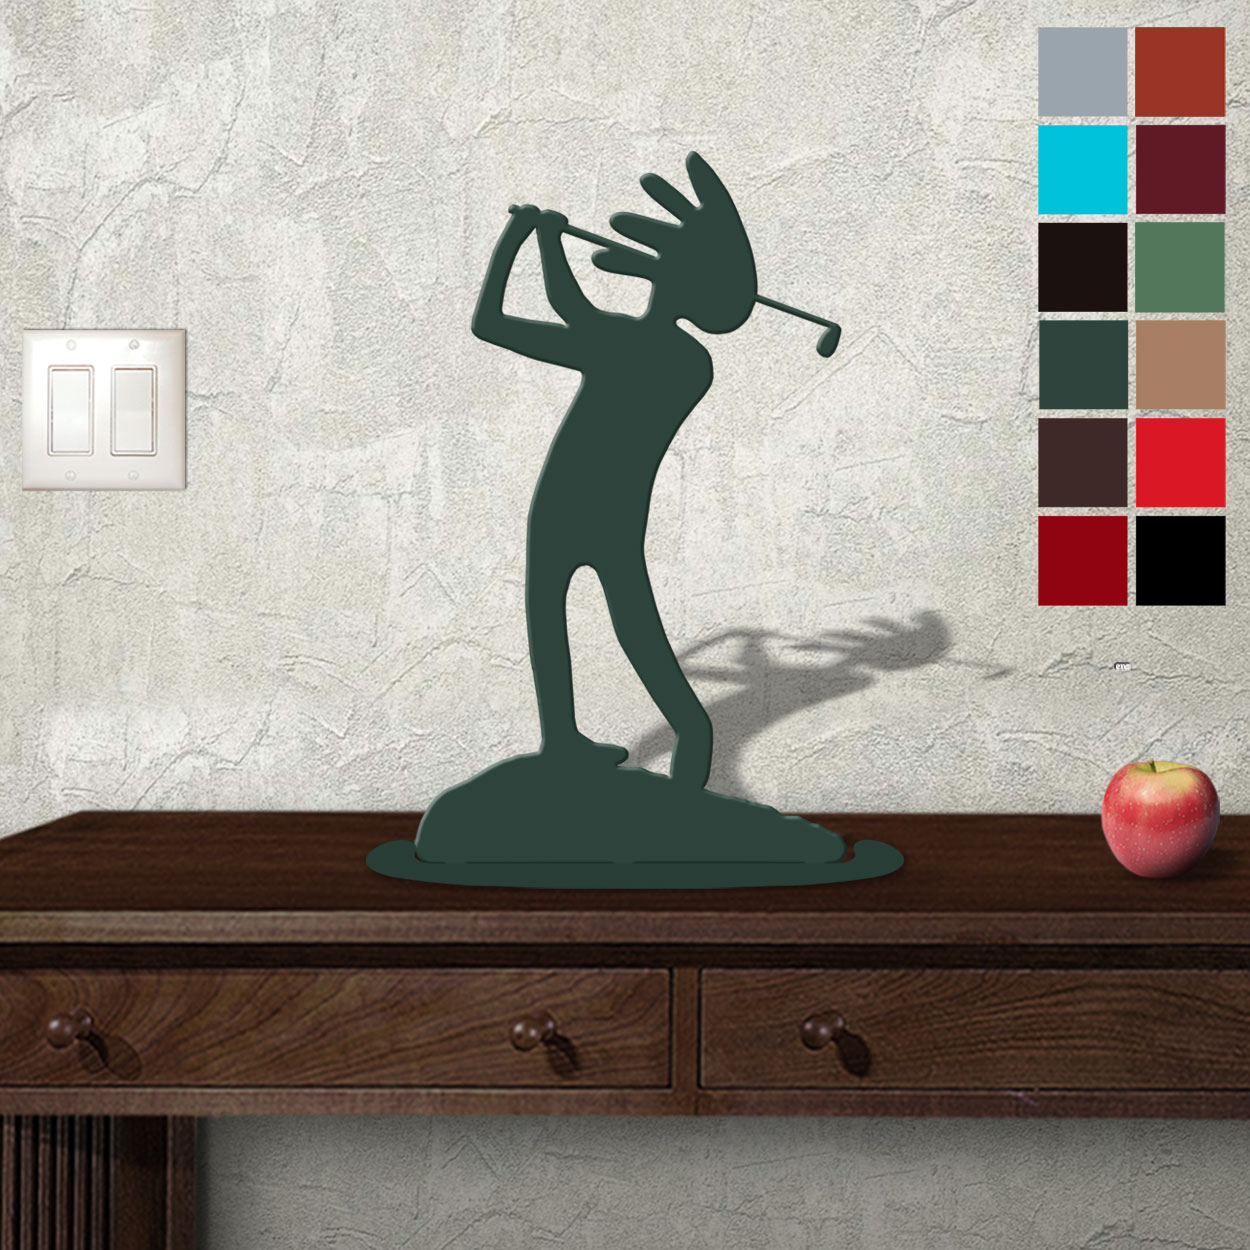 623414 - Tabletop Metal Sculpture - 11in W x 18in H - Kokopelli Golfer - Choose Color